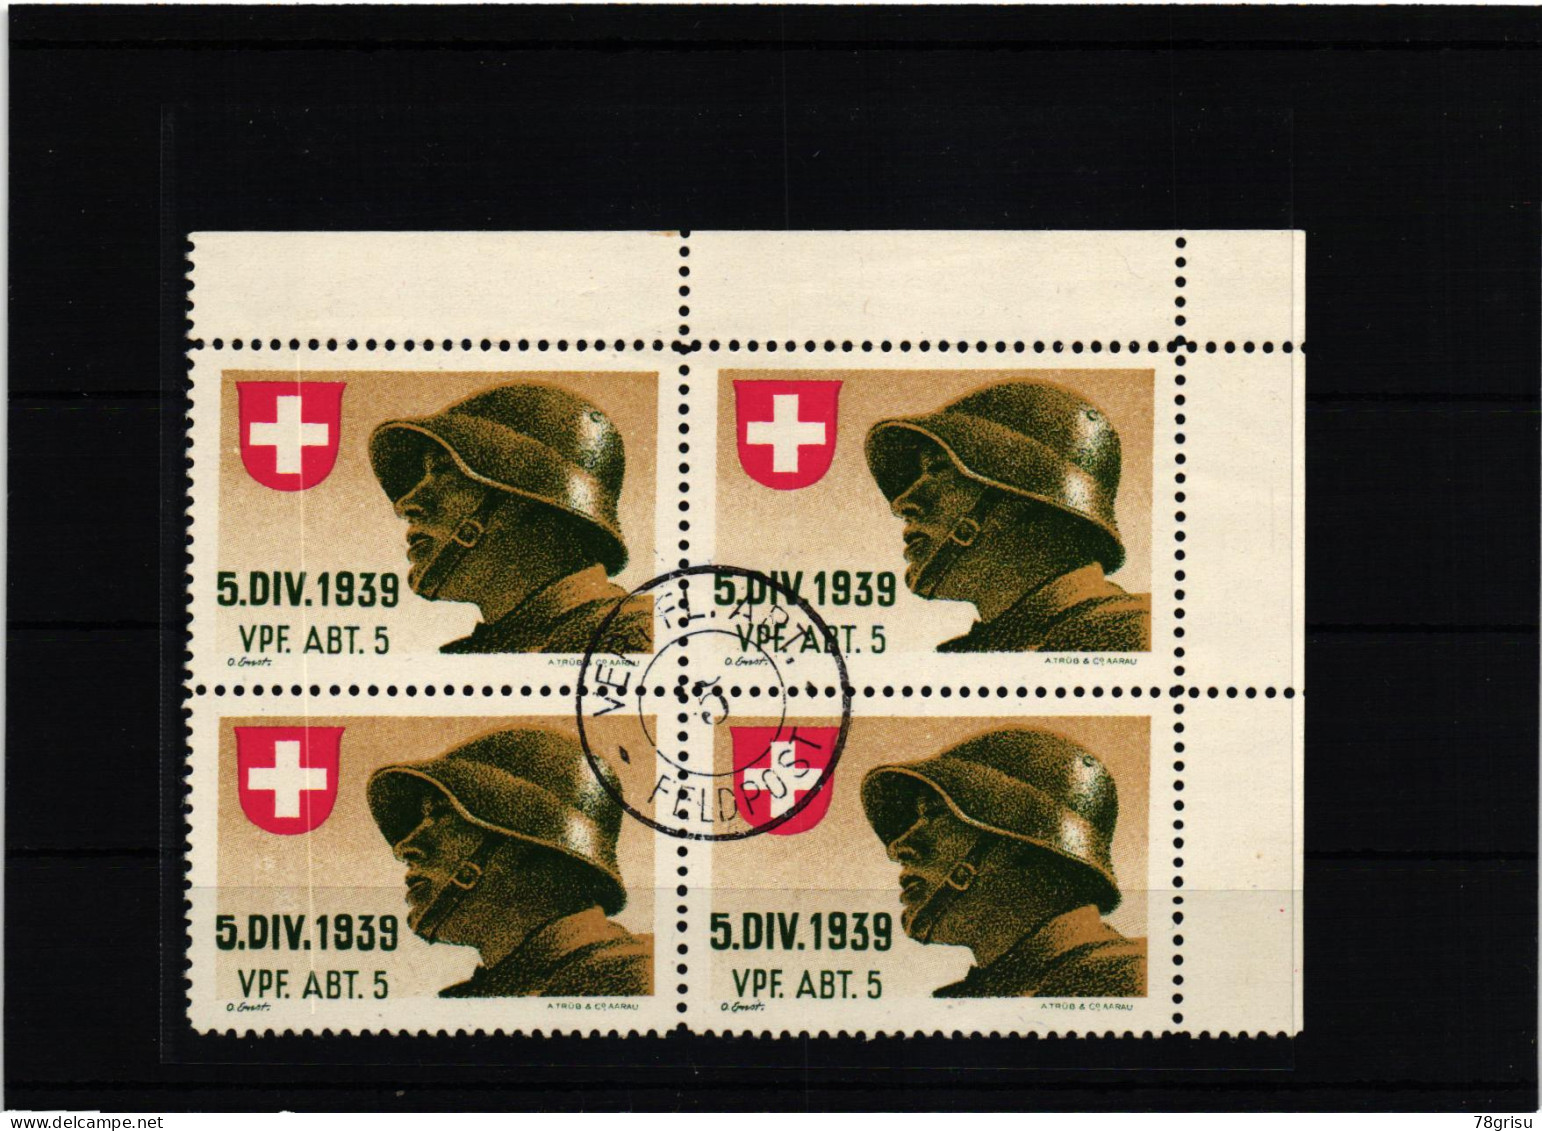 Schweiz Soldatenmarken, Vpf.Abt. Verpflegungs Abteilung 1939 Ges. - Vignetten